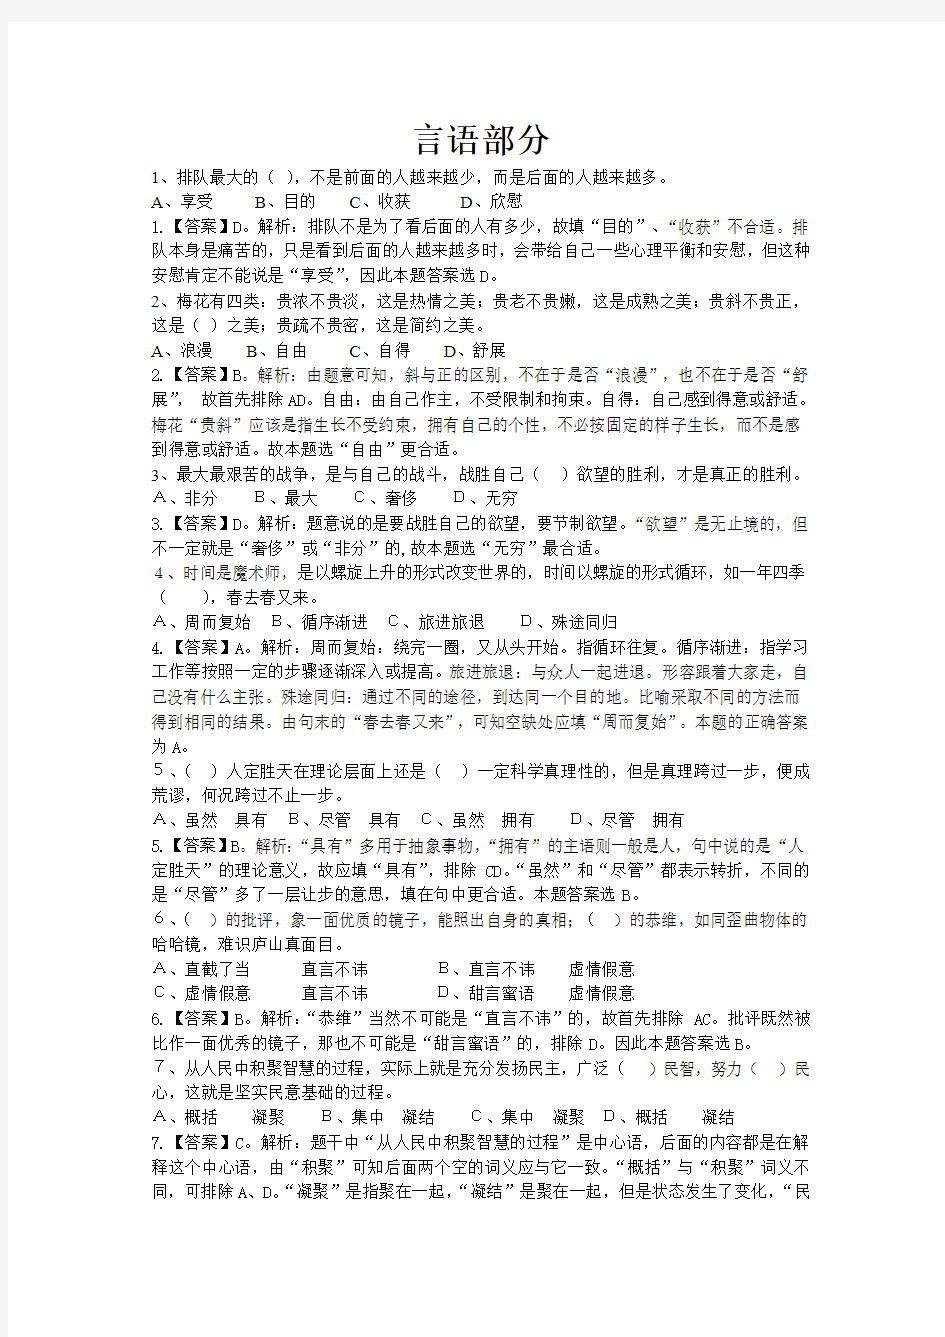 2009年河南省政法干警考试(本硕)《行测》试卷不全且缺常识部分的答案与解析